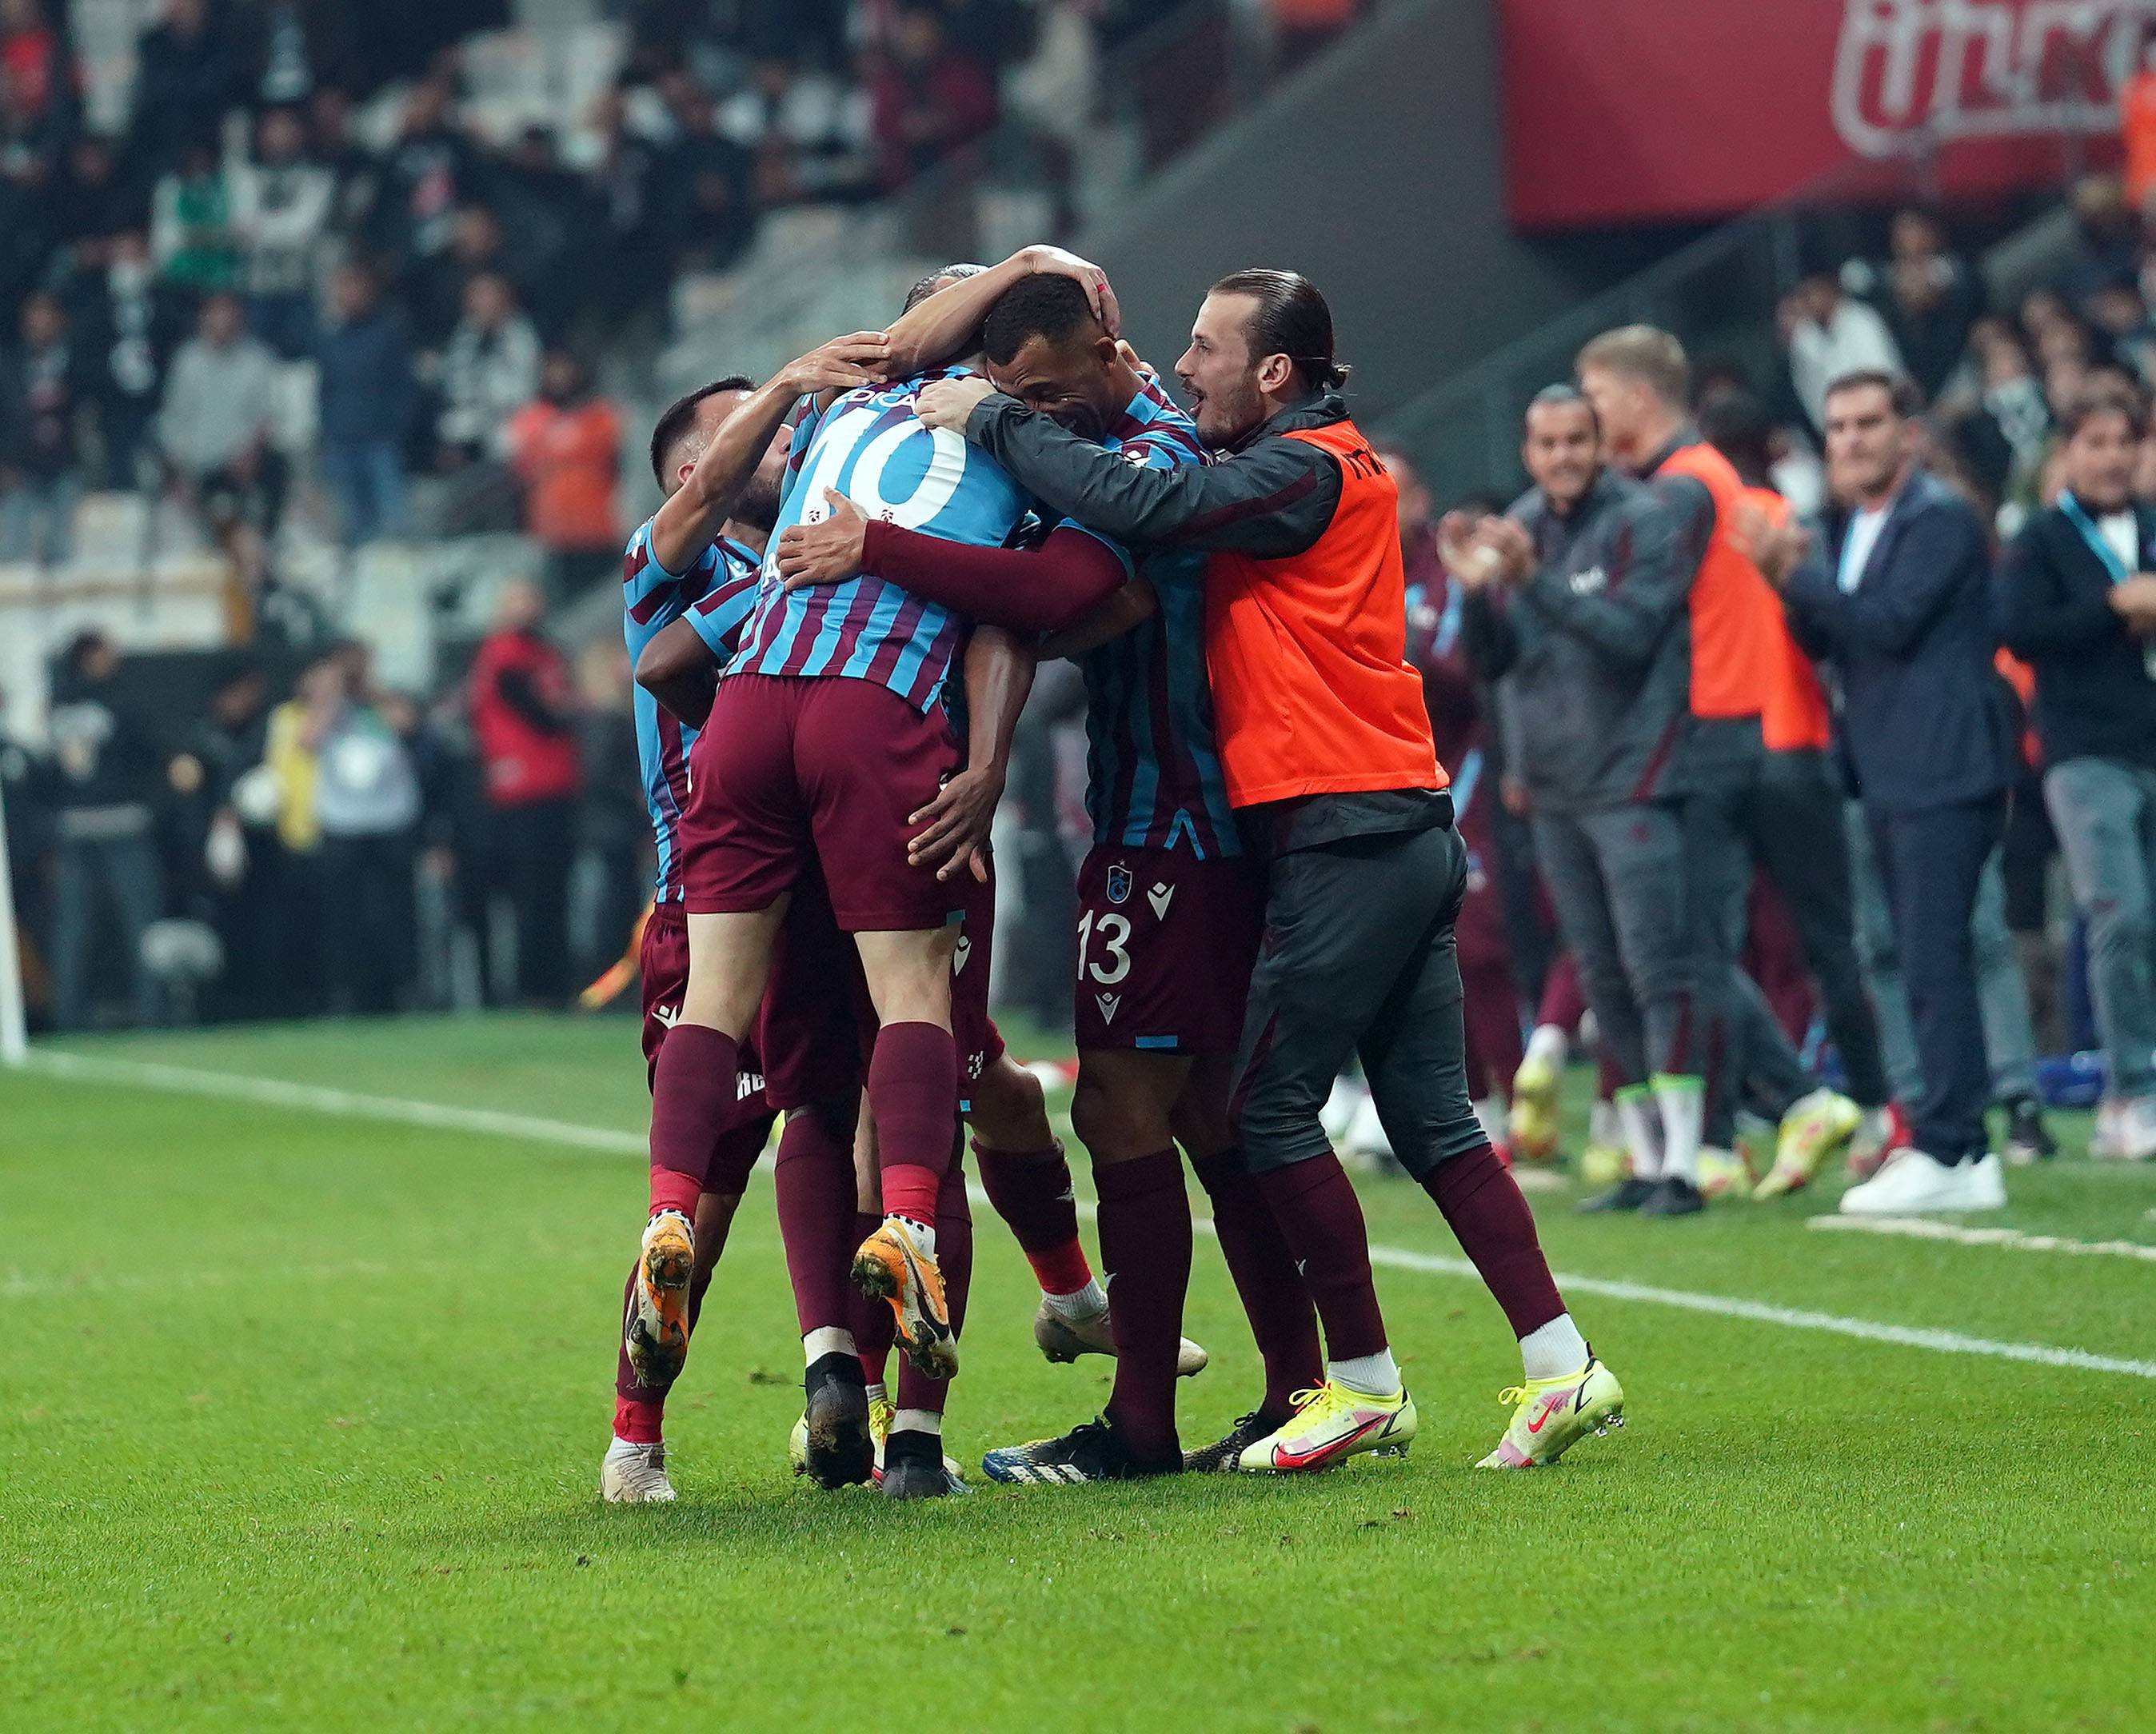 Spor Toto Süper Lig'de 12 haftada 9 galibiyet 3 beraberlik ile 30 puan toplayan Trabzonspor, şampiyonluğun en büyük adayı olarak görülüyor.